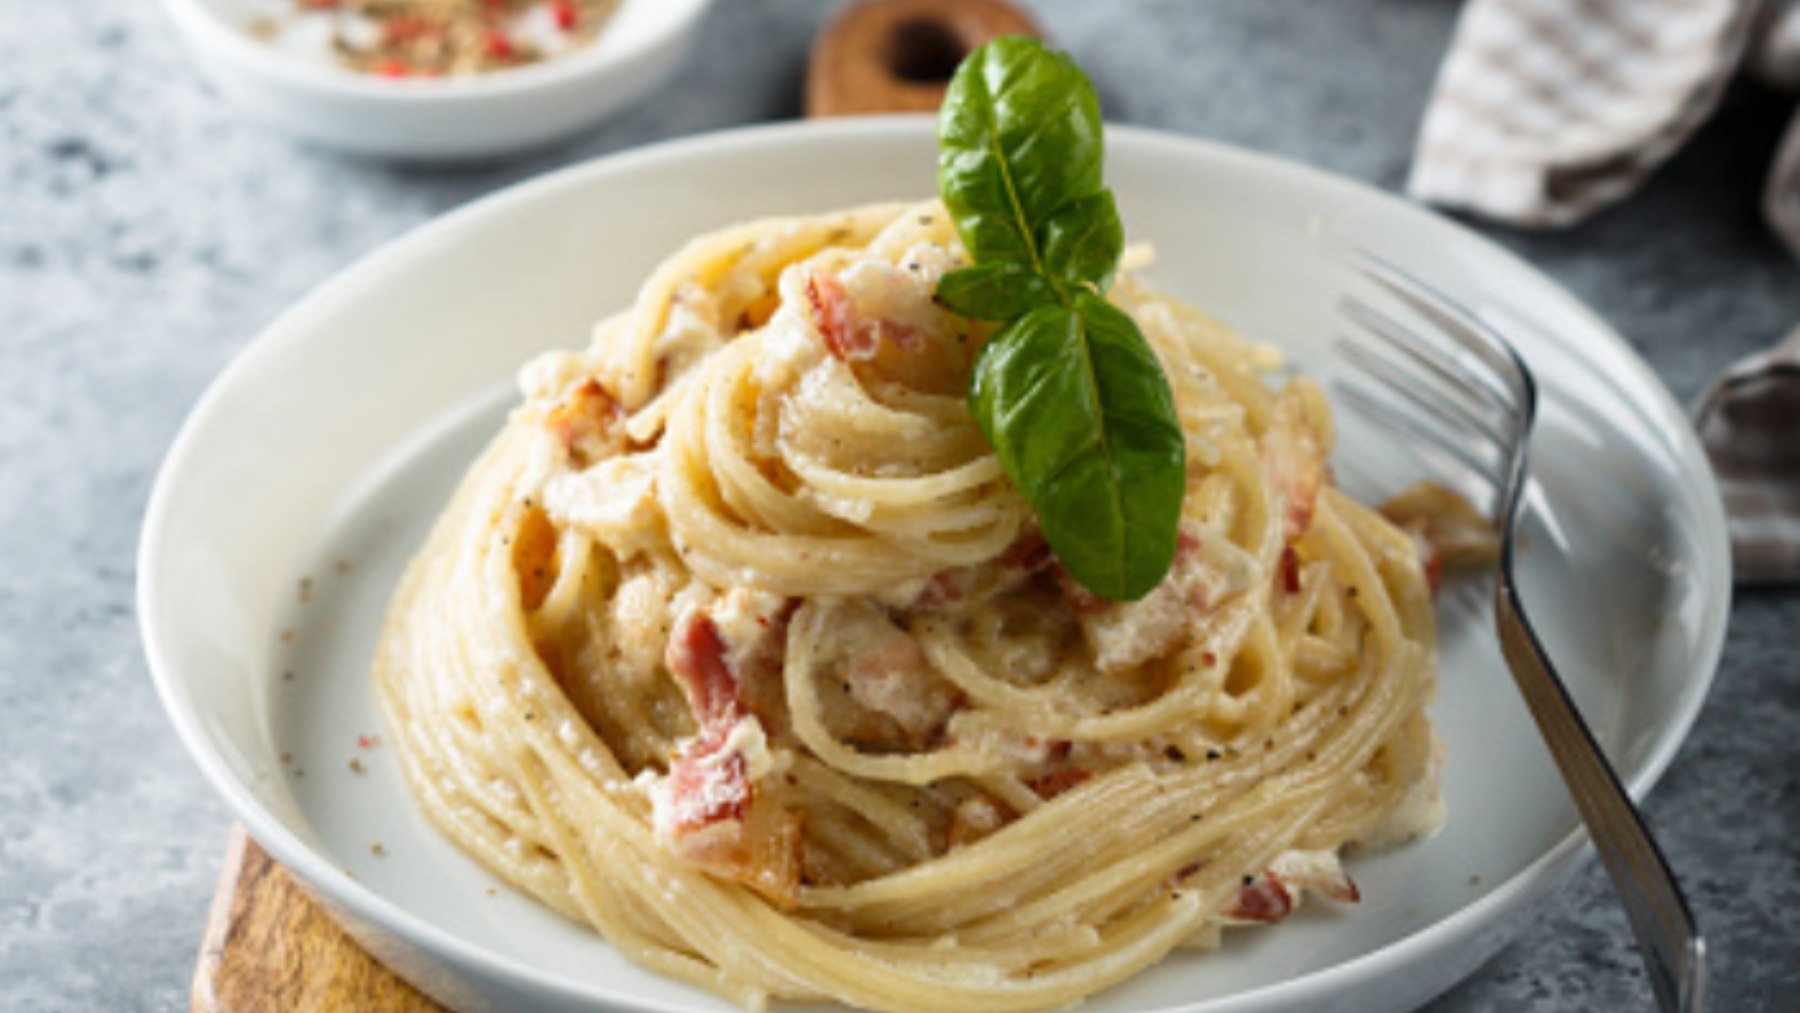 Espaguetis a la pimienta con jamón ibérico, receta fácil de preparar y deliciosa